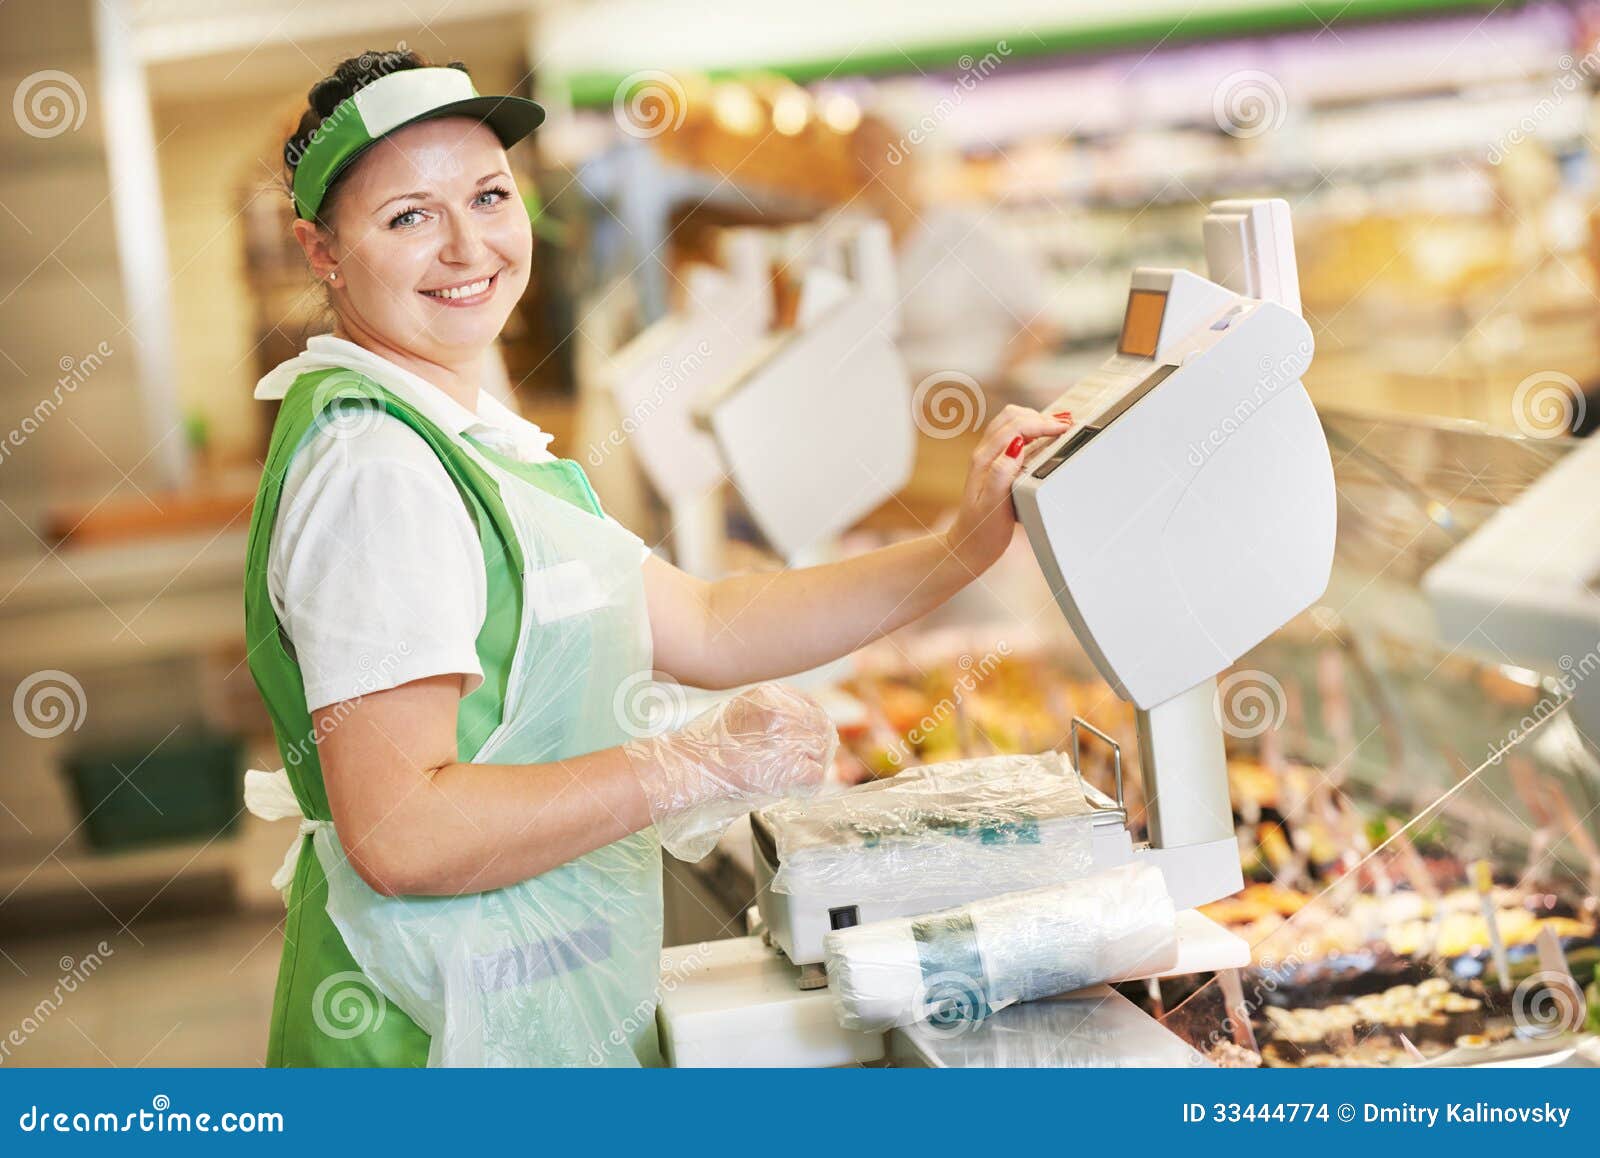 saleswoman in supermarket shop